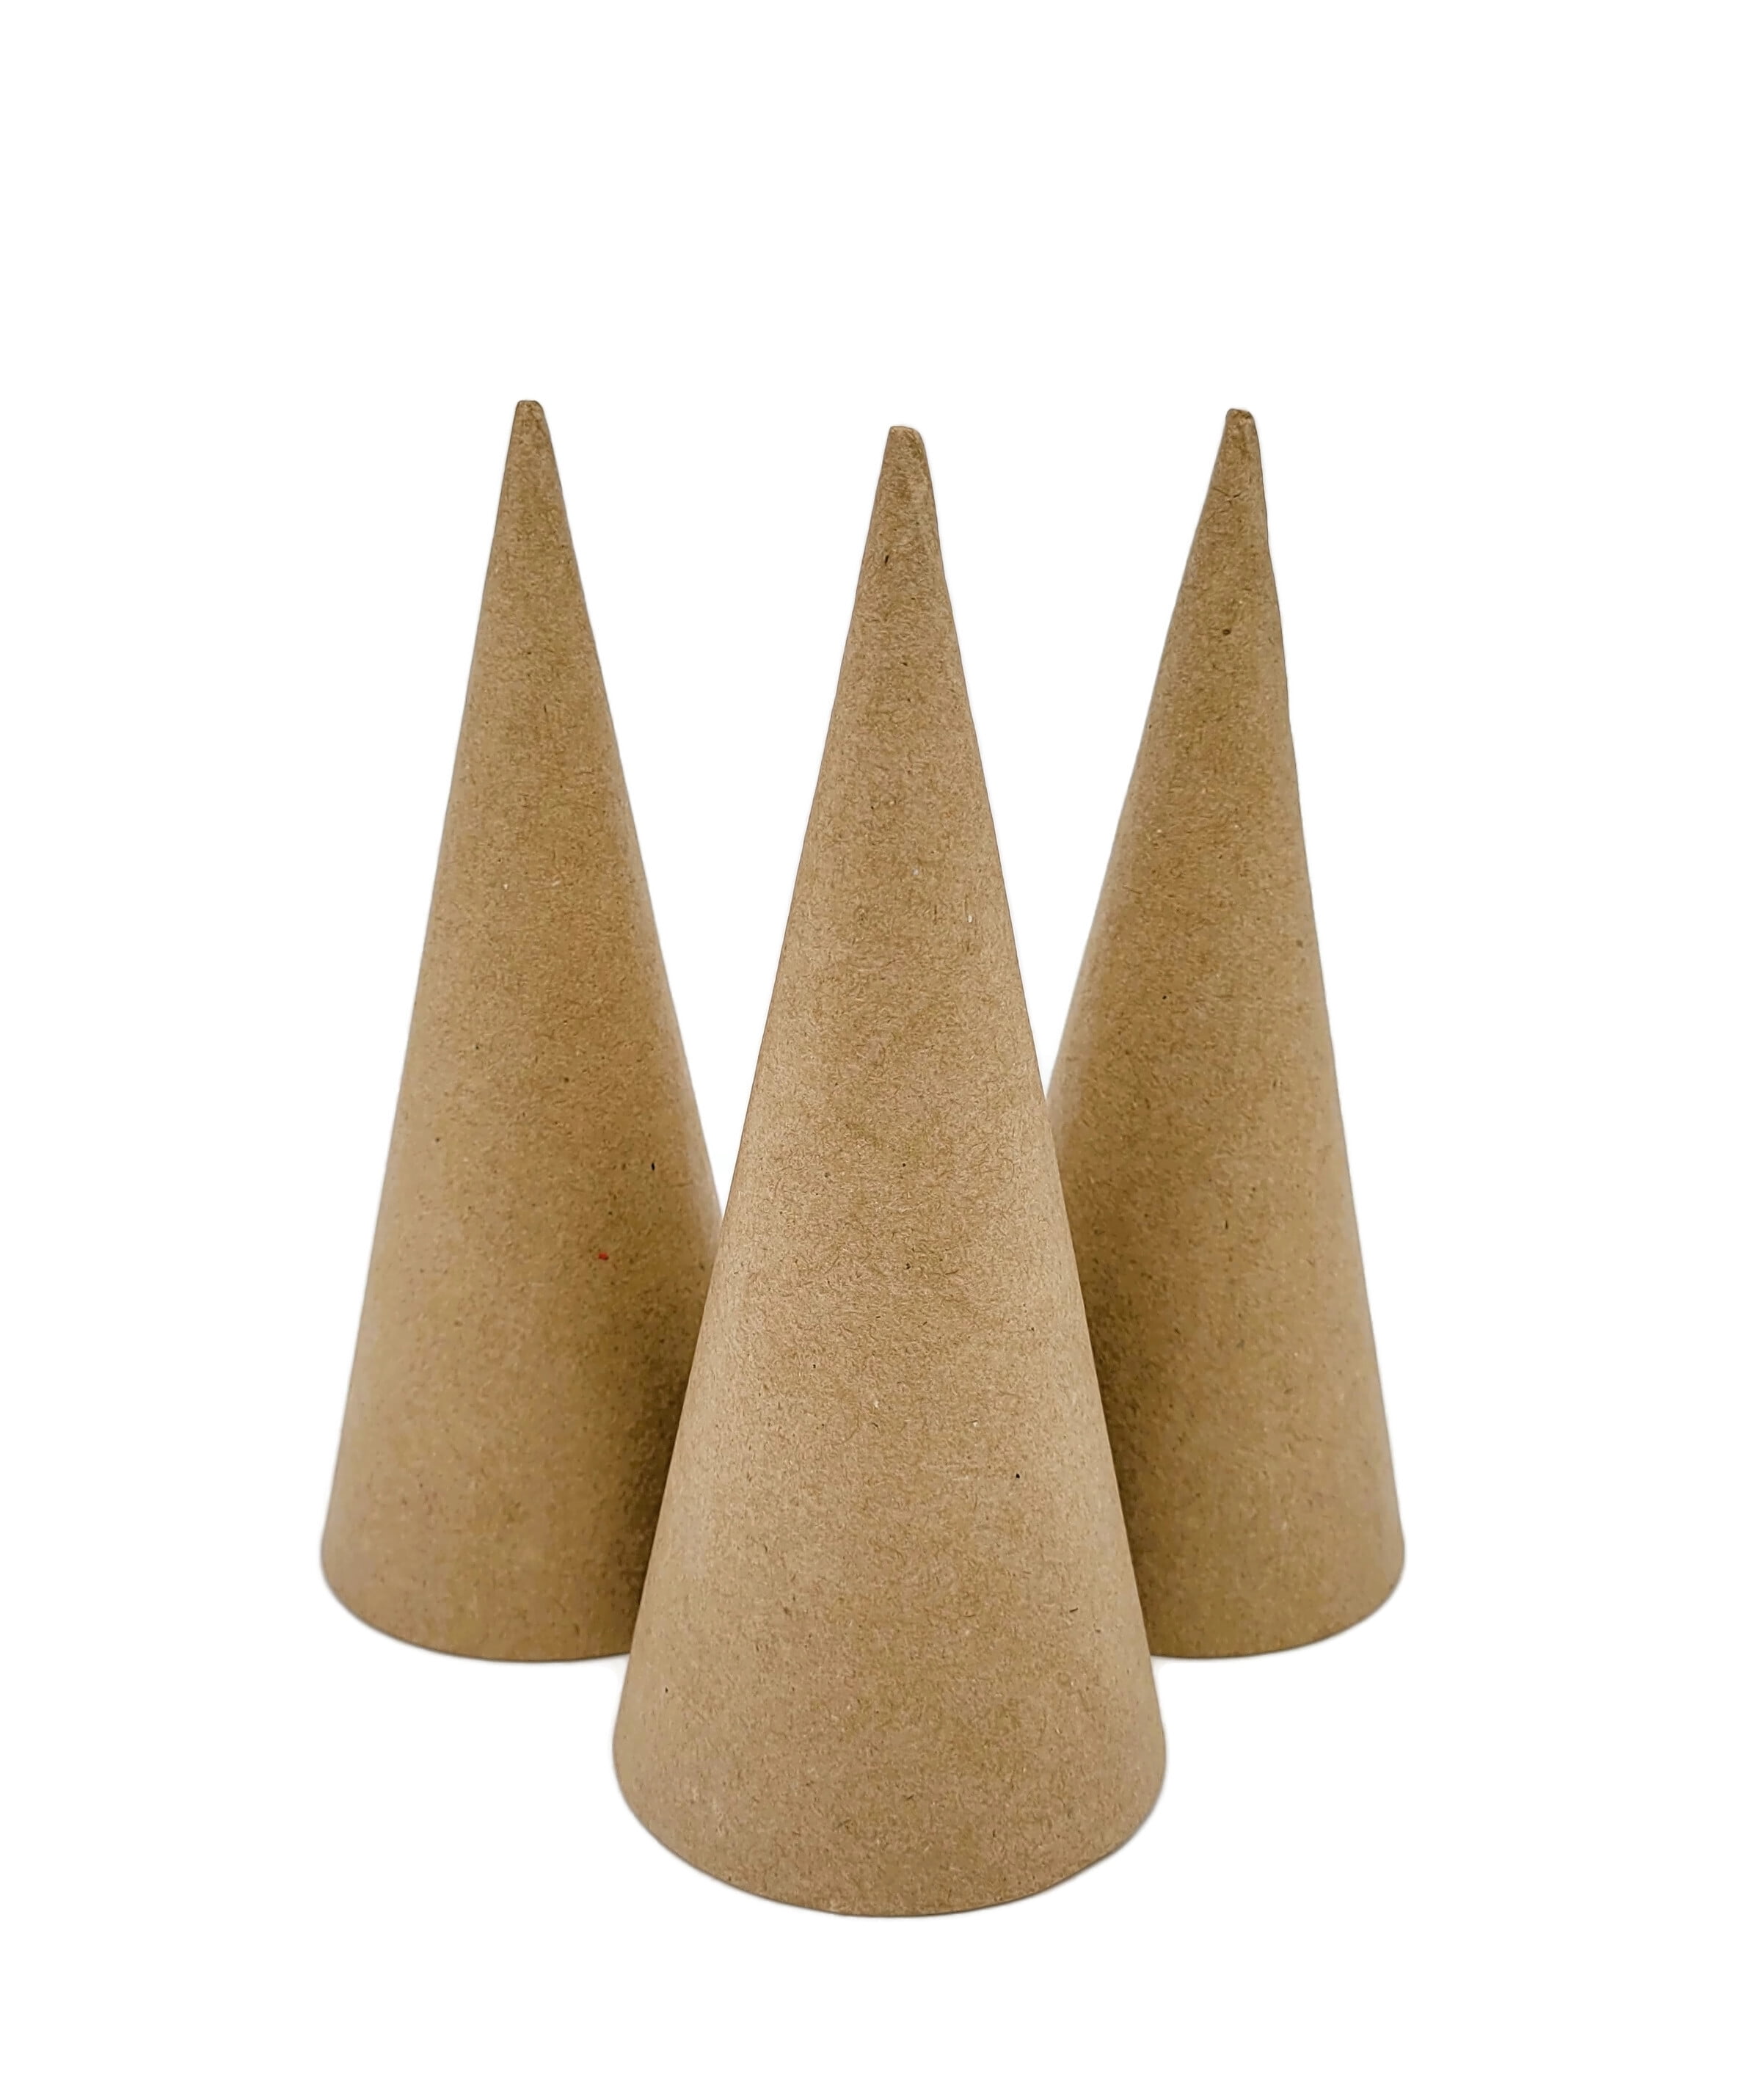 Paper Mache Cone Open Bottom 7x3 in. Set of 3 (Small)